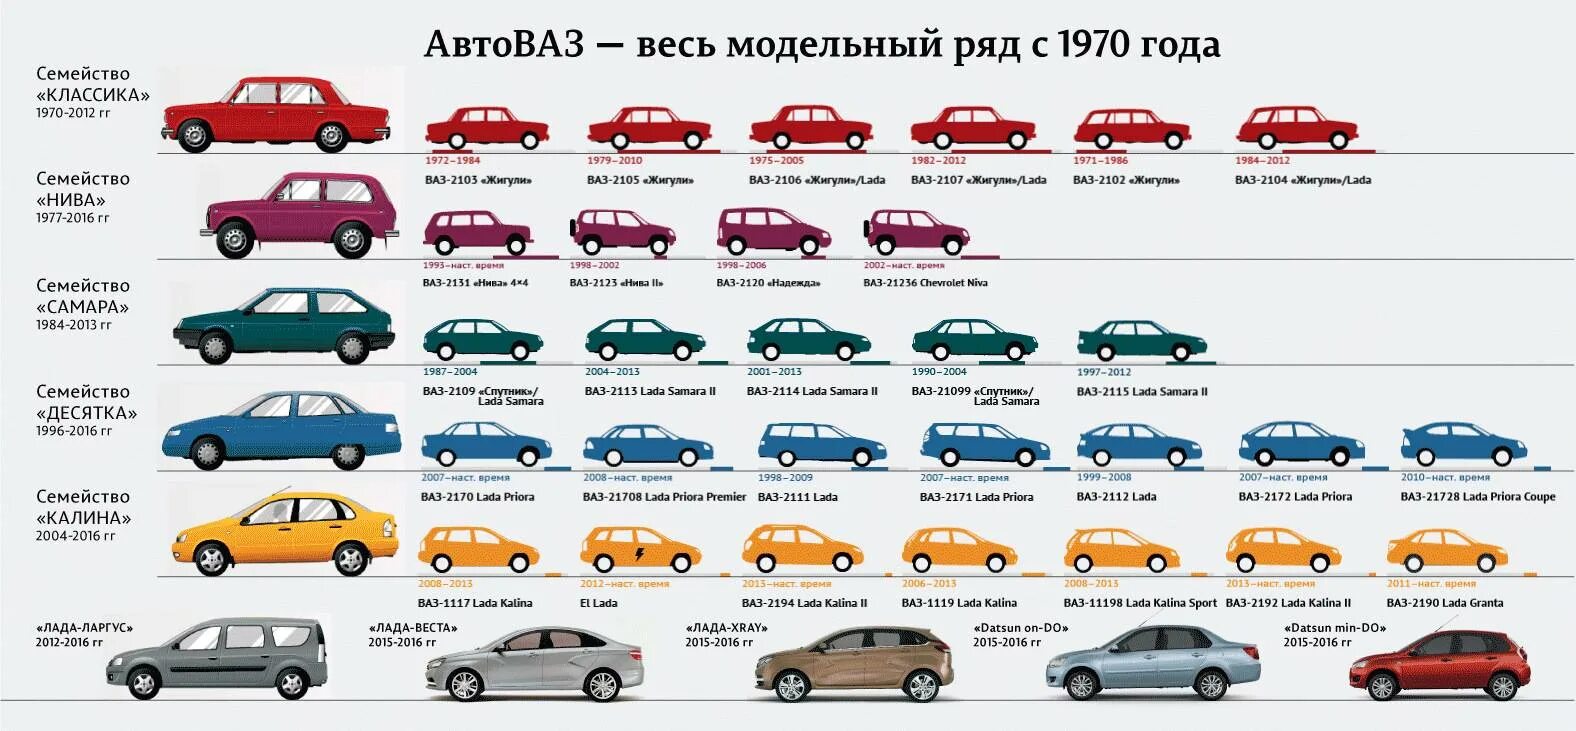 Название российских машин. ВАЗ линейка моделей. Хронология автомобилей ВАЗ по годам. Модельный ряд ВАЗ 2101-2115.